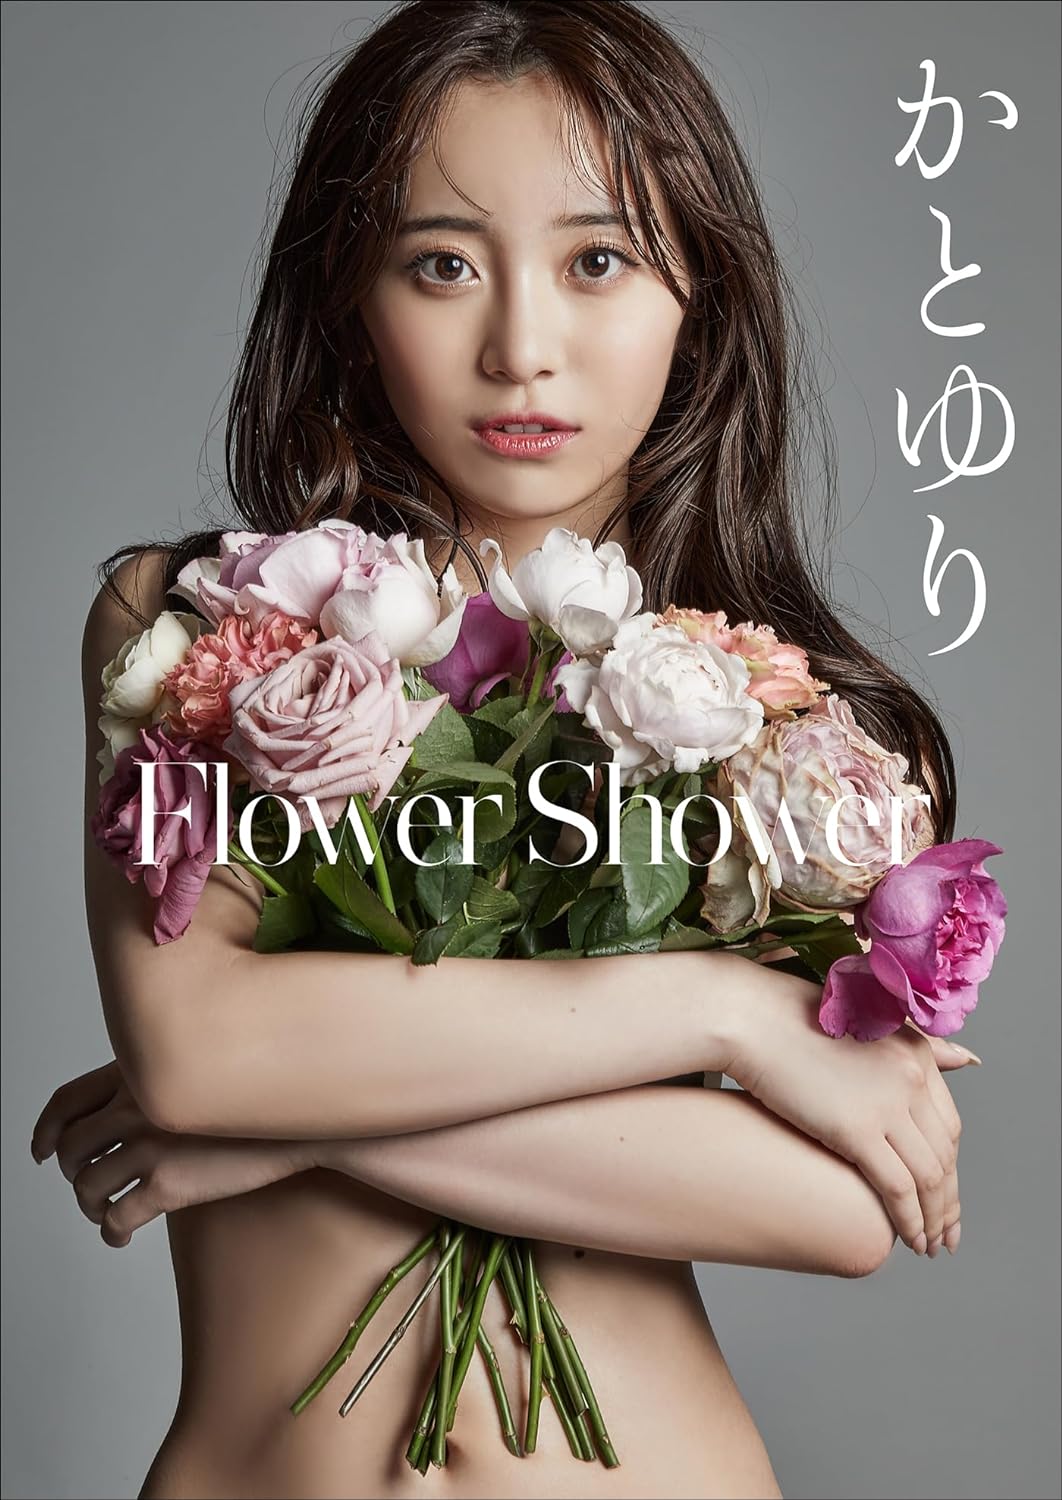 かとゆり　Flower Shower スピ/サン グラビアフォトブック Kindle版のサンプル画像